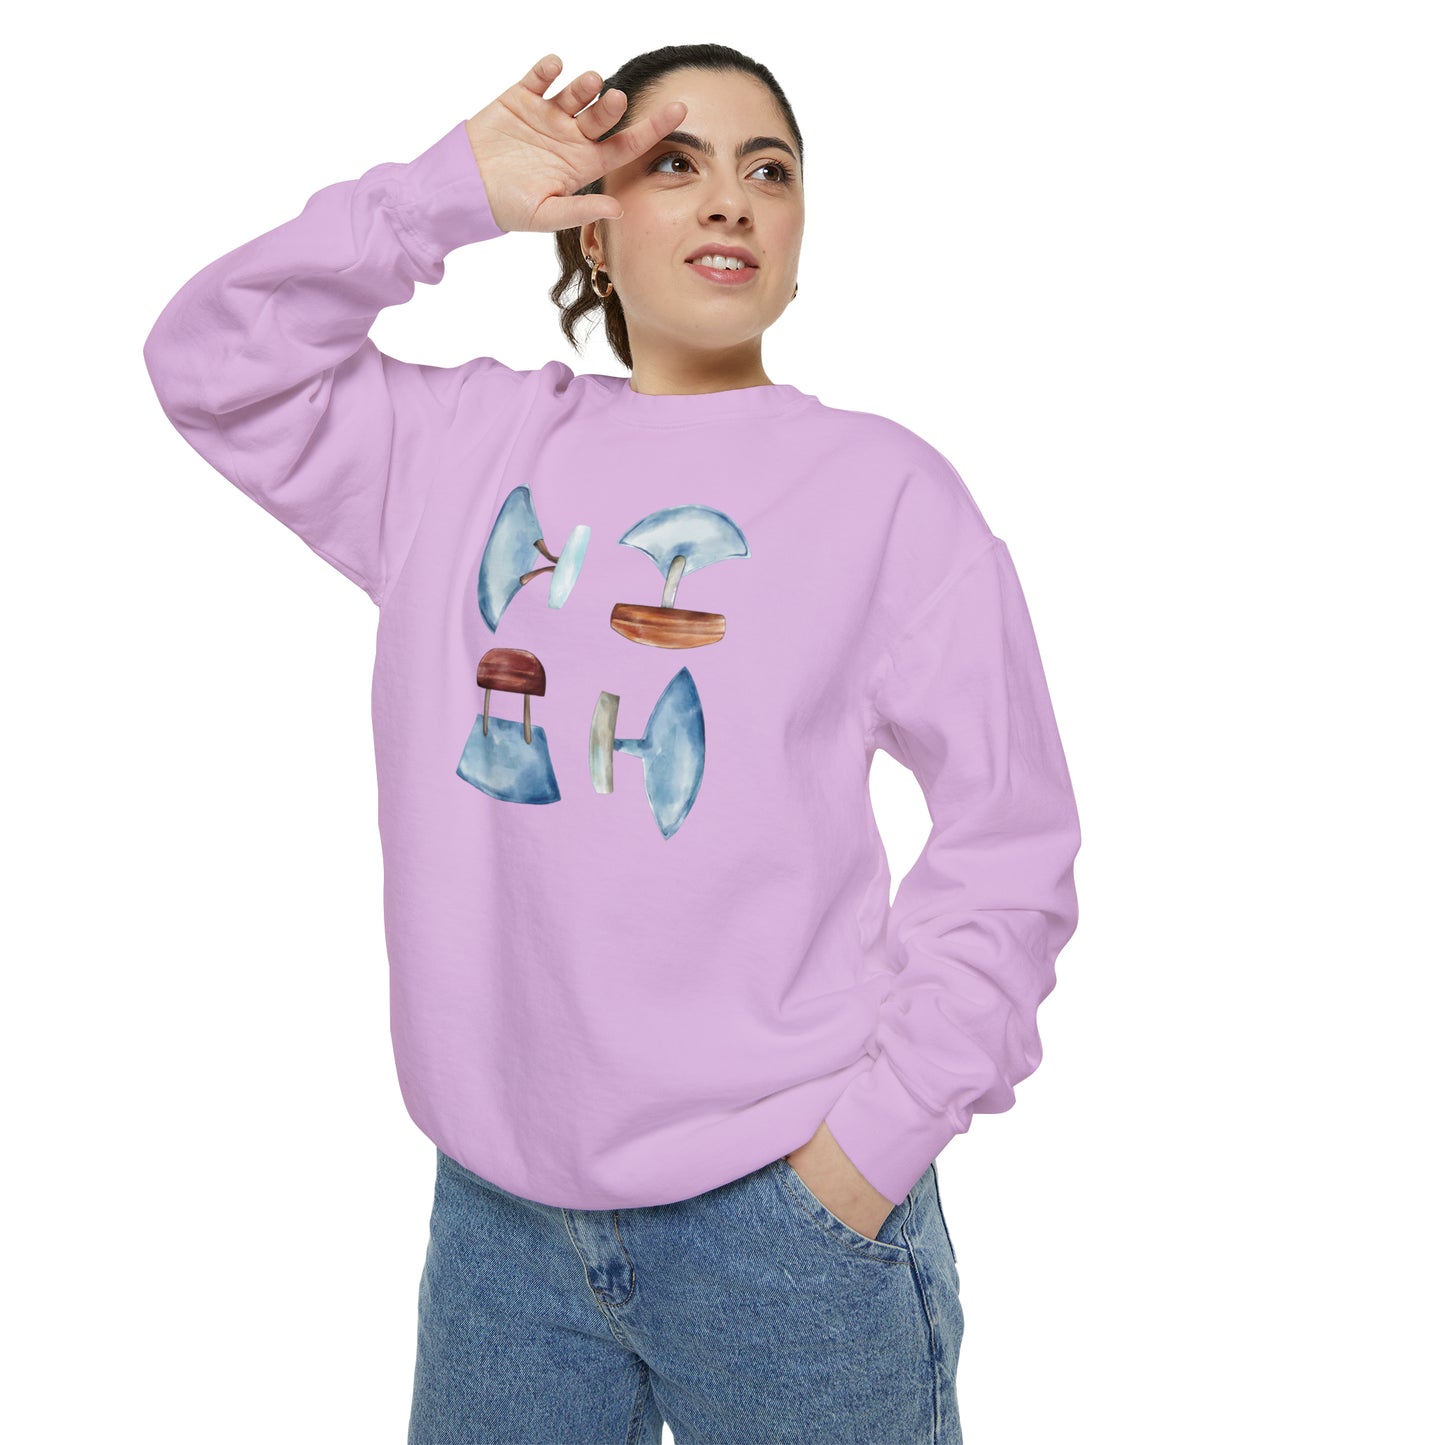 Ulu Watercolor Sweatshirt